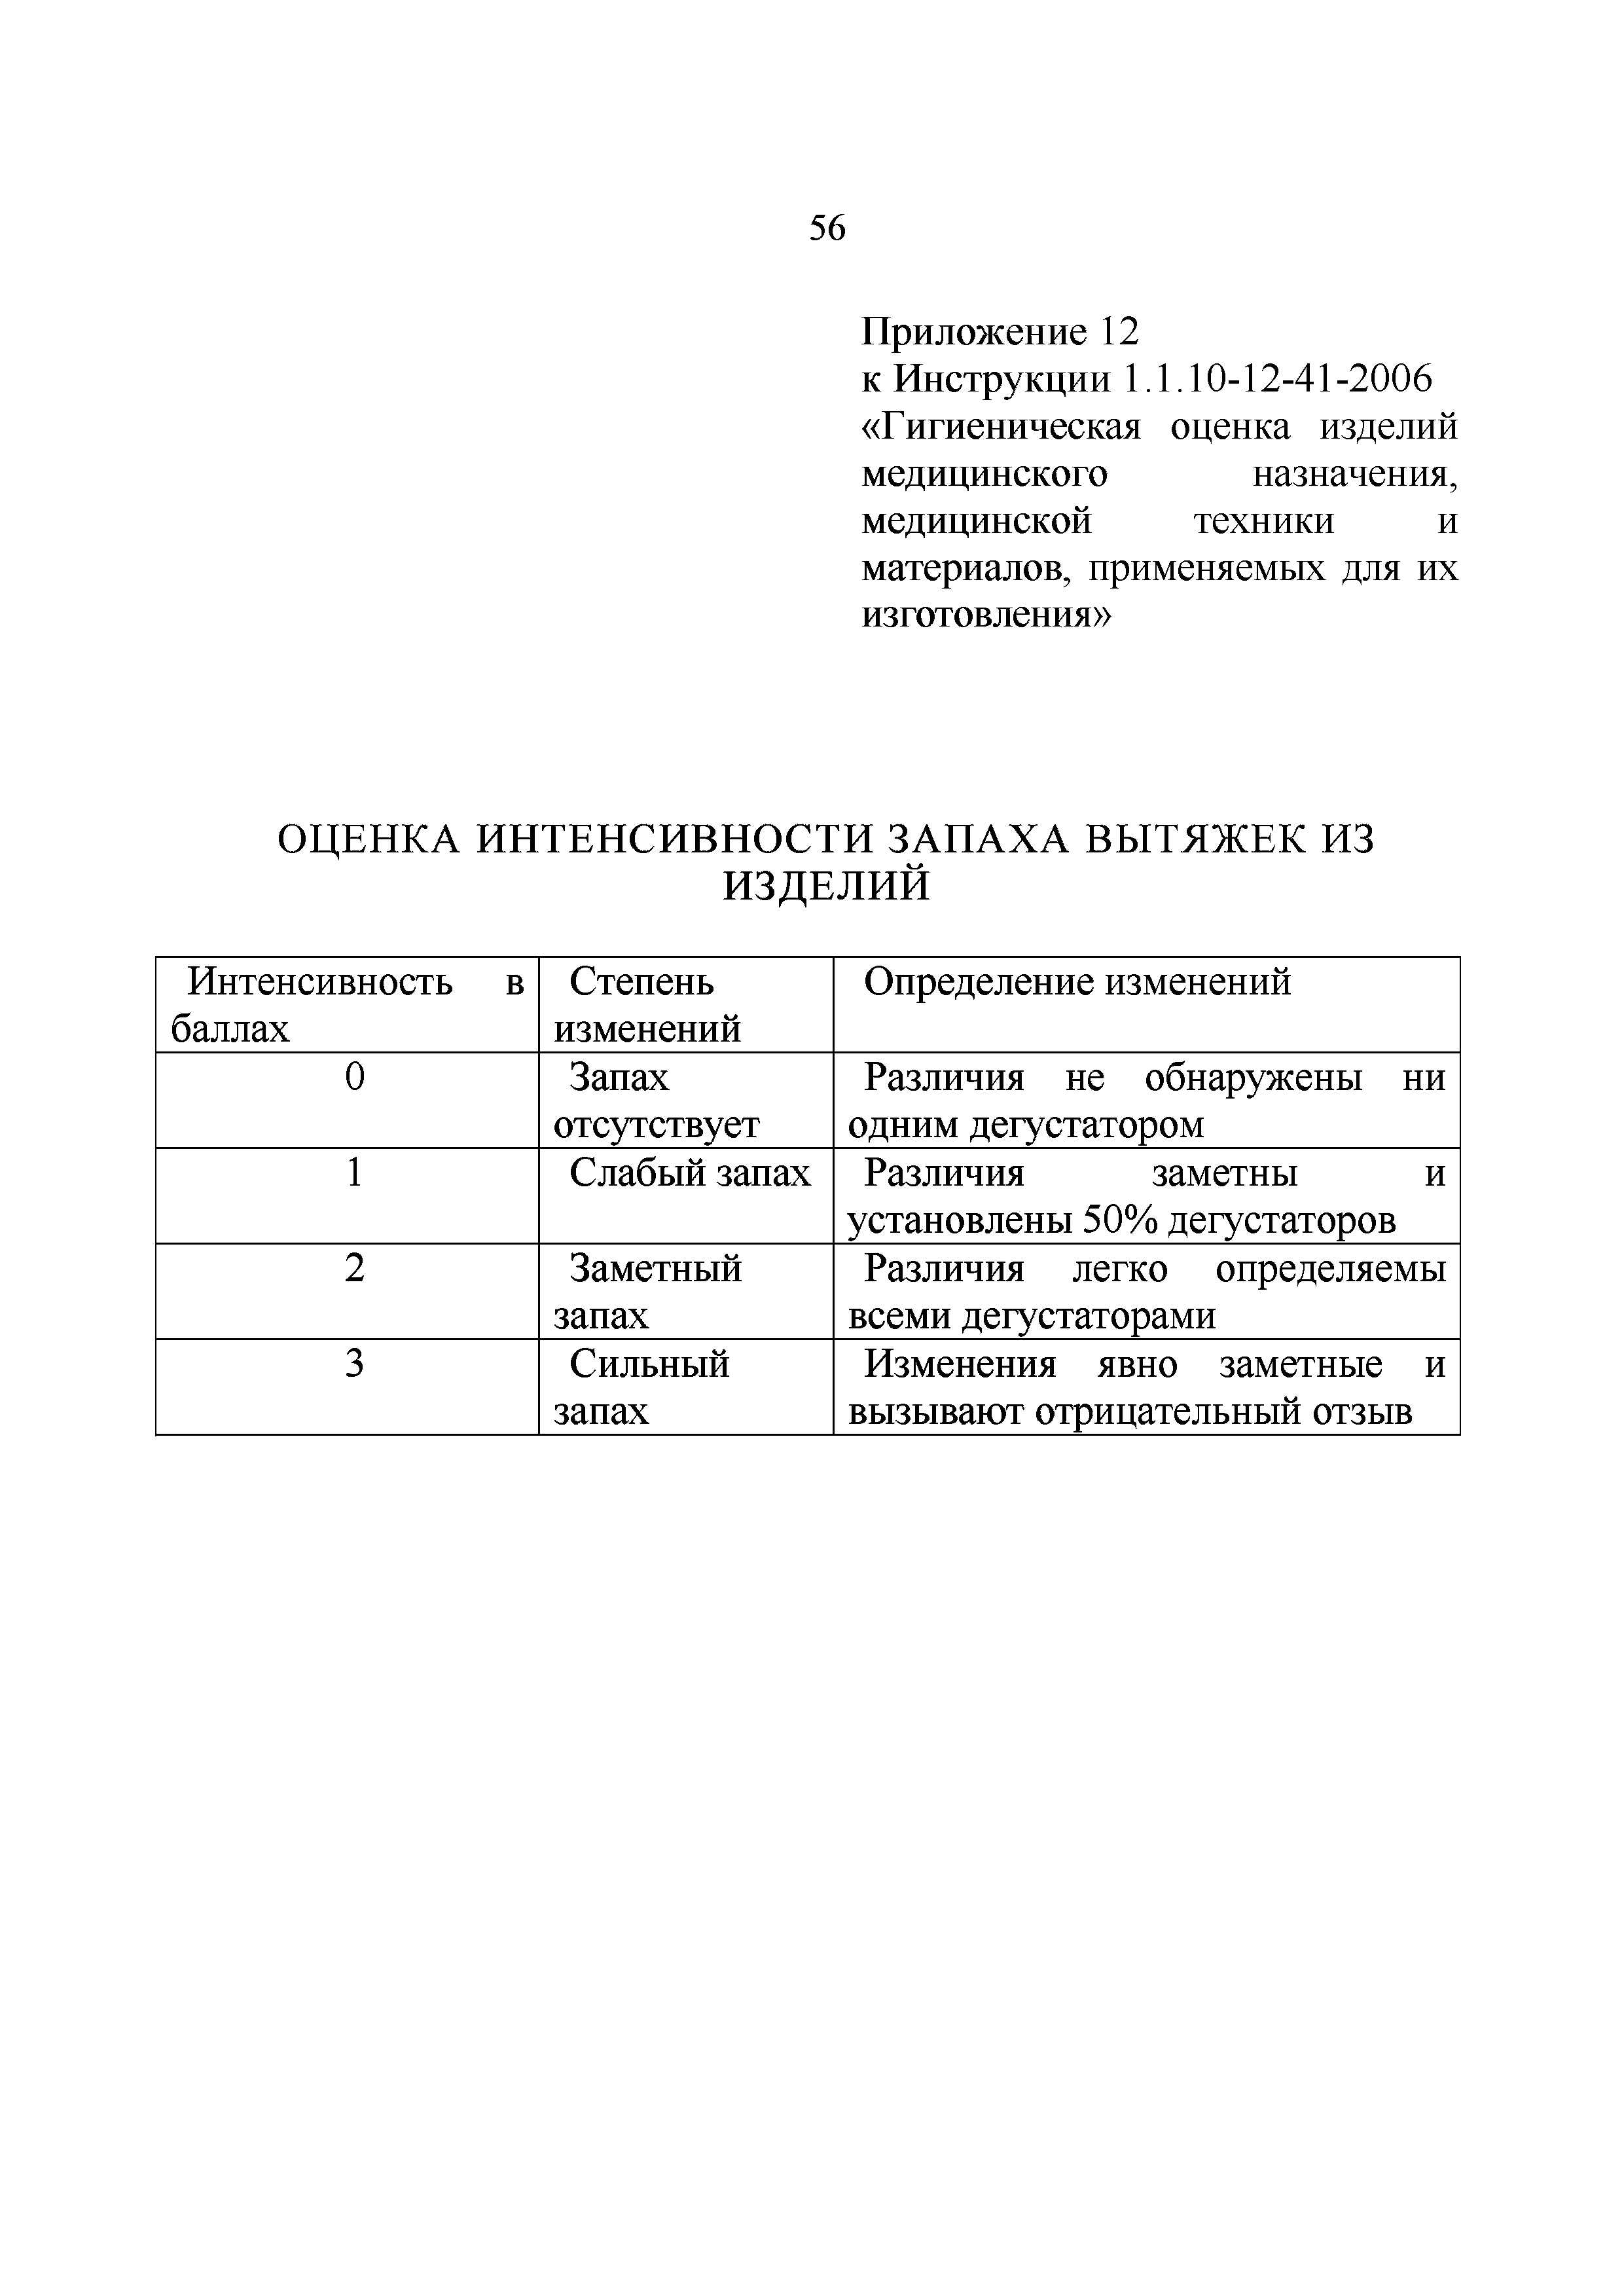 Инструкция 1.1.10-12-41-2006